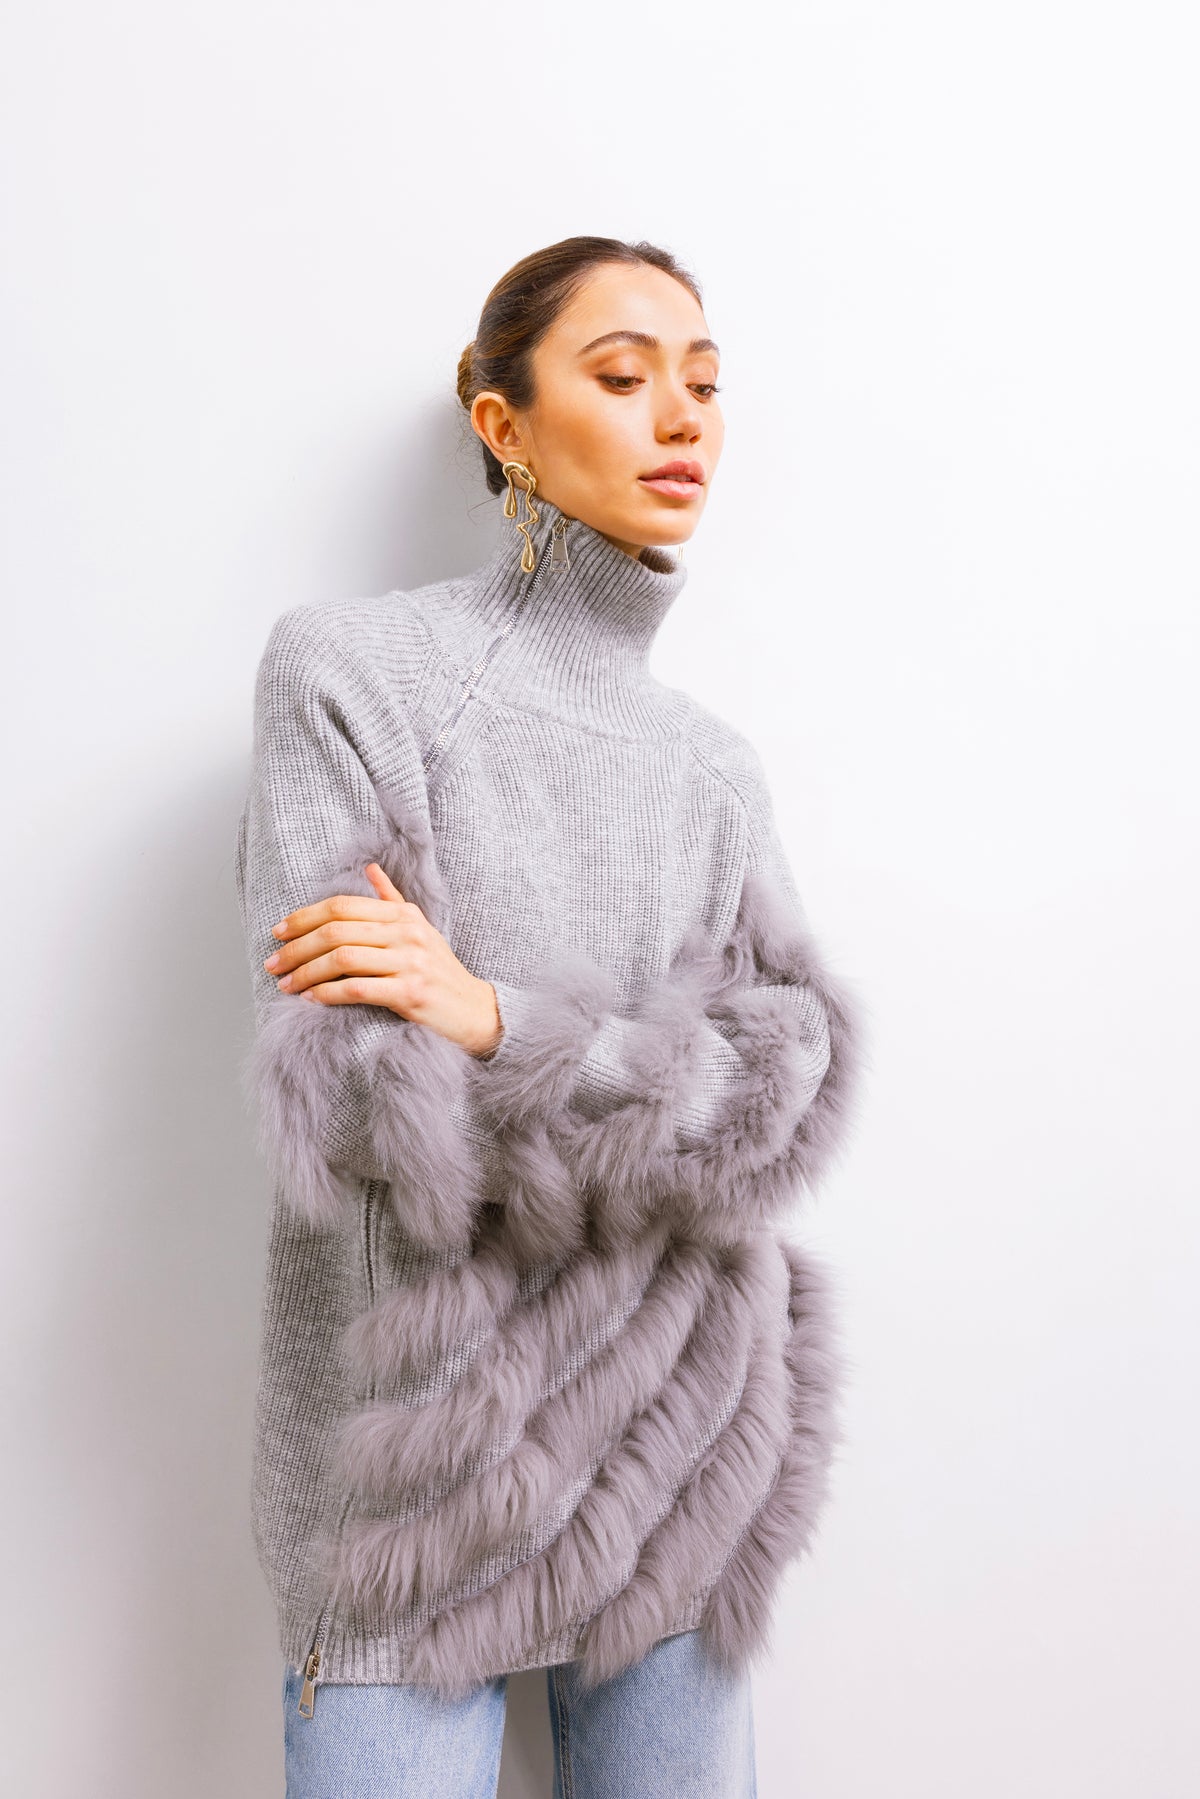 Between Lines Fur Sweater with Zip in Gray